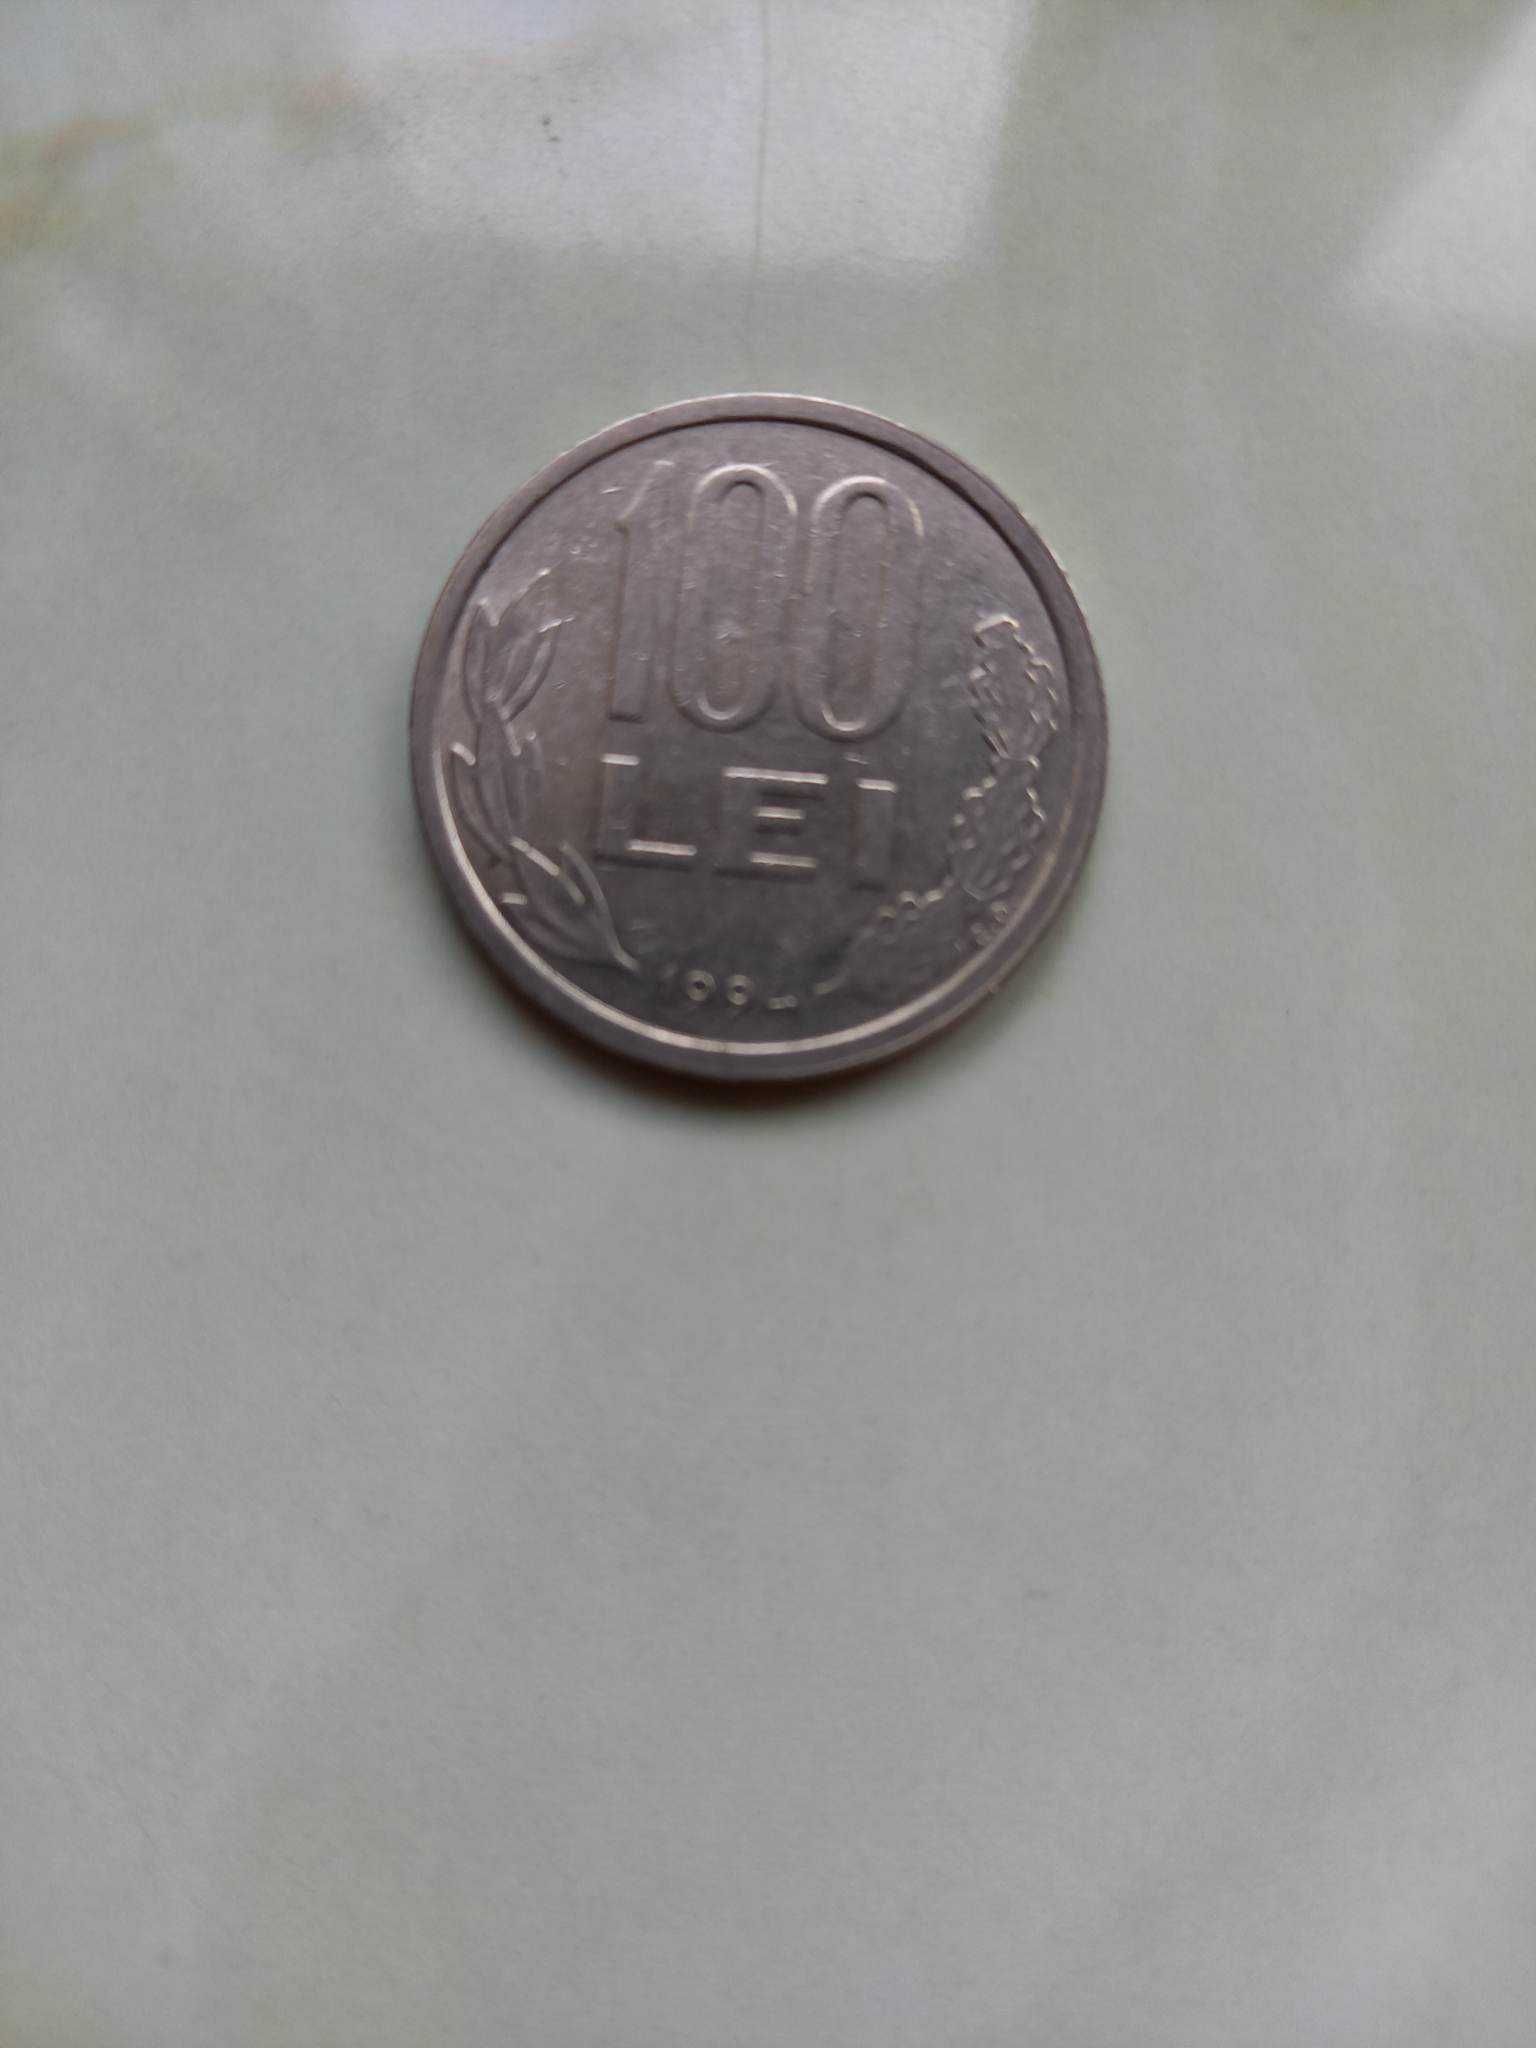 8 monede diferite 100 lei Mihai Viteazul - toti anii - ultimul lot !!!